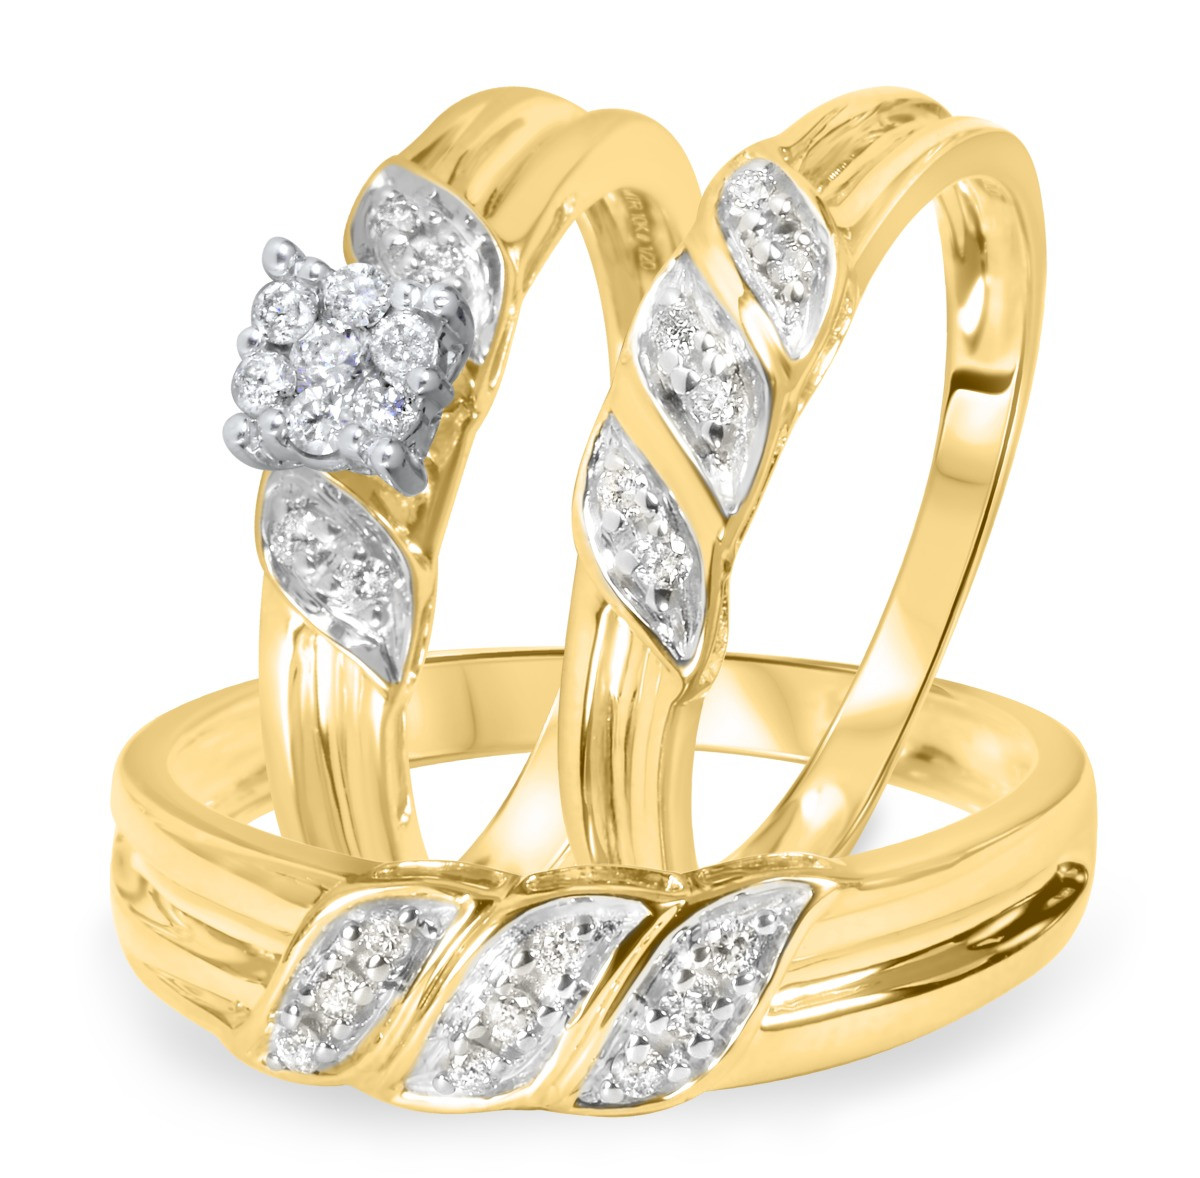 14 carat wedding rings